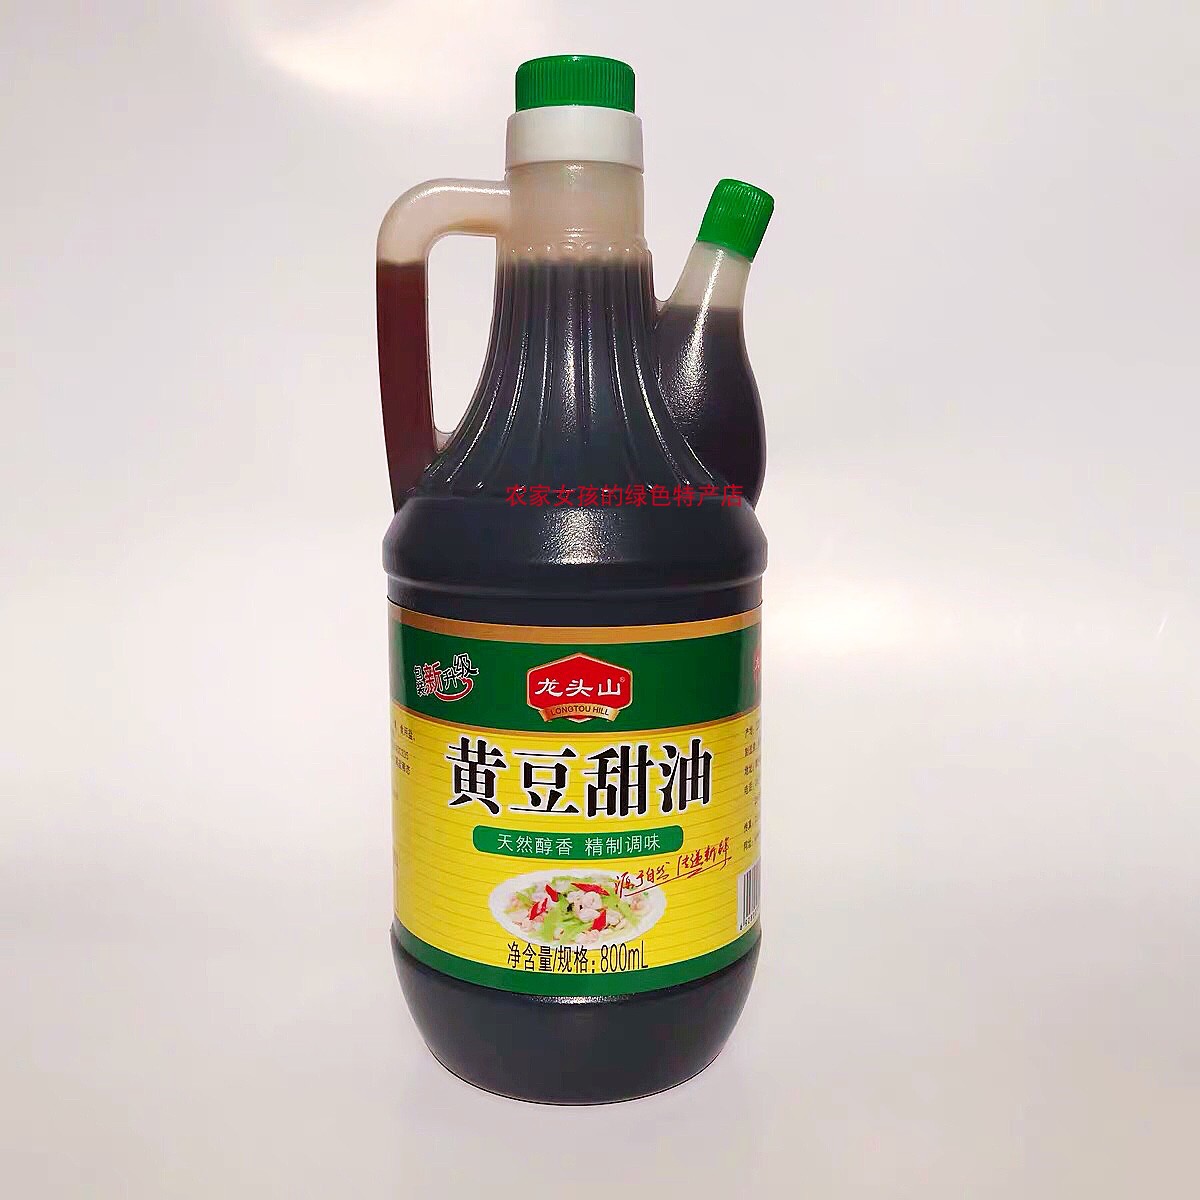 徐州睢宁特产甜油 天然粮食酿造 龙头山黄豆甜油 凉菜调味品800ml